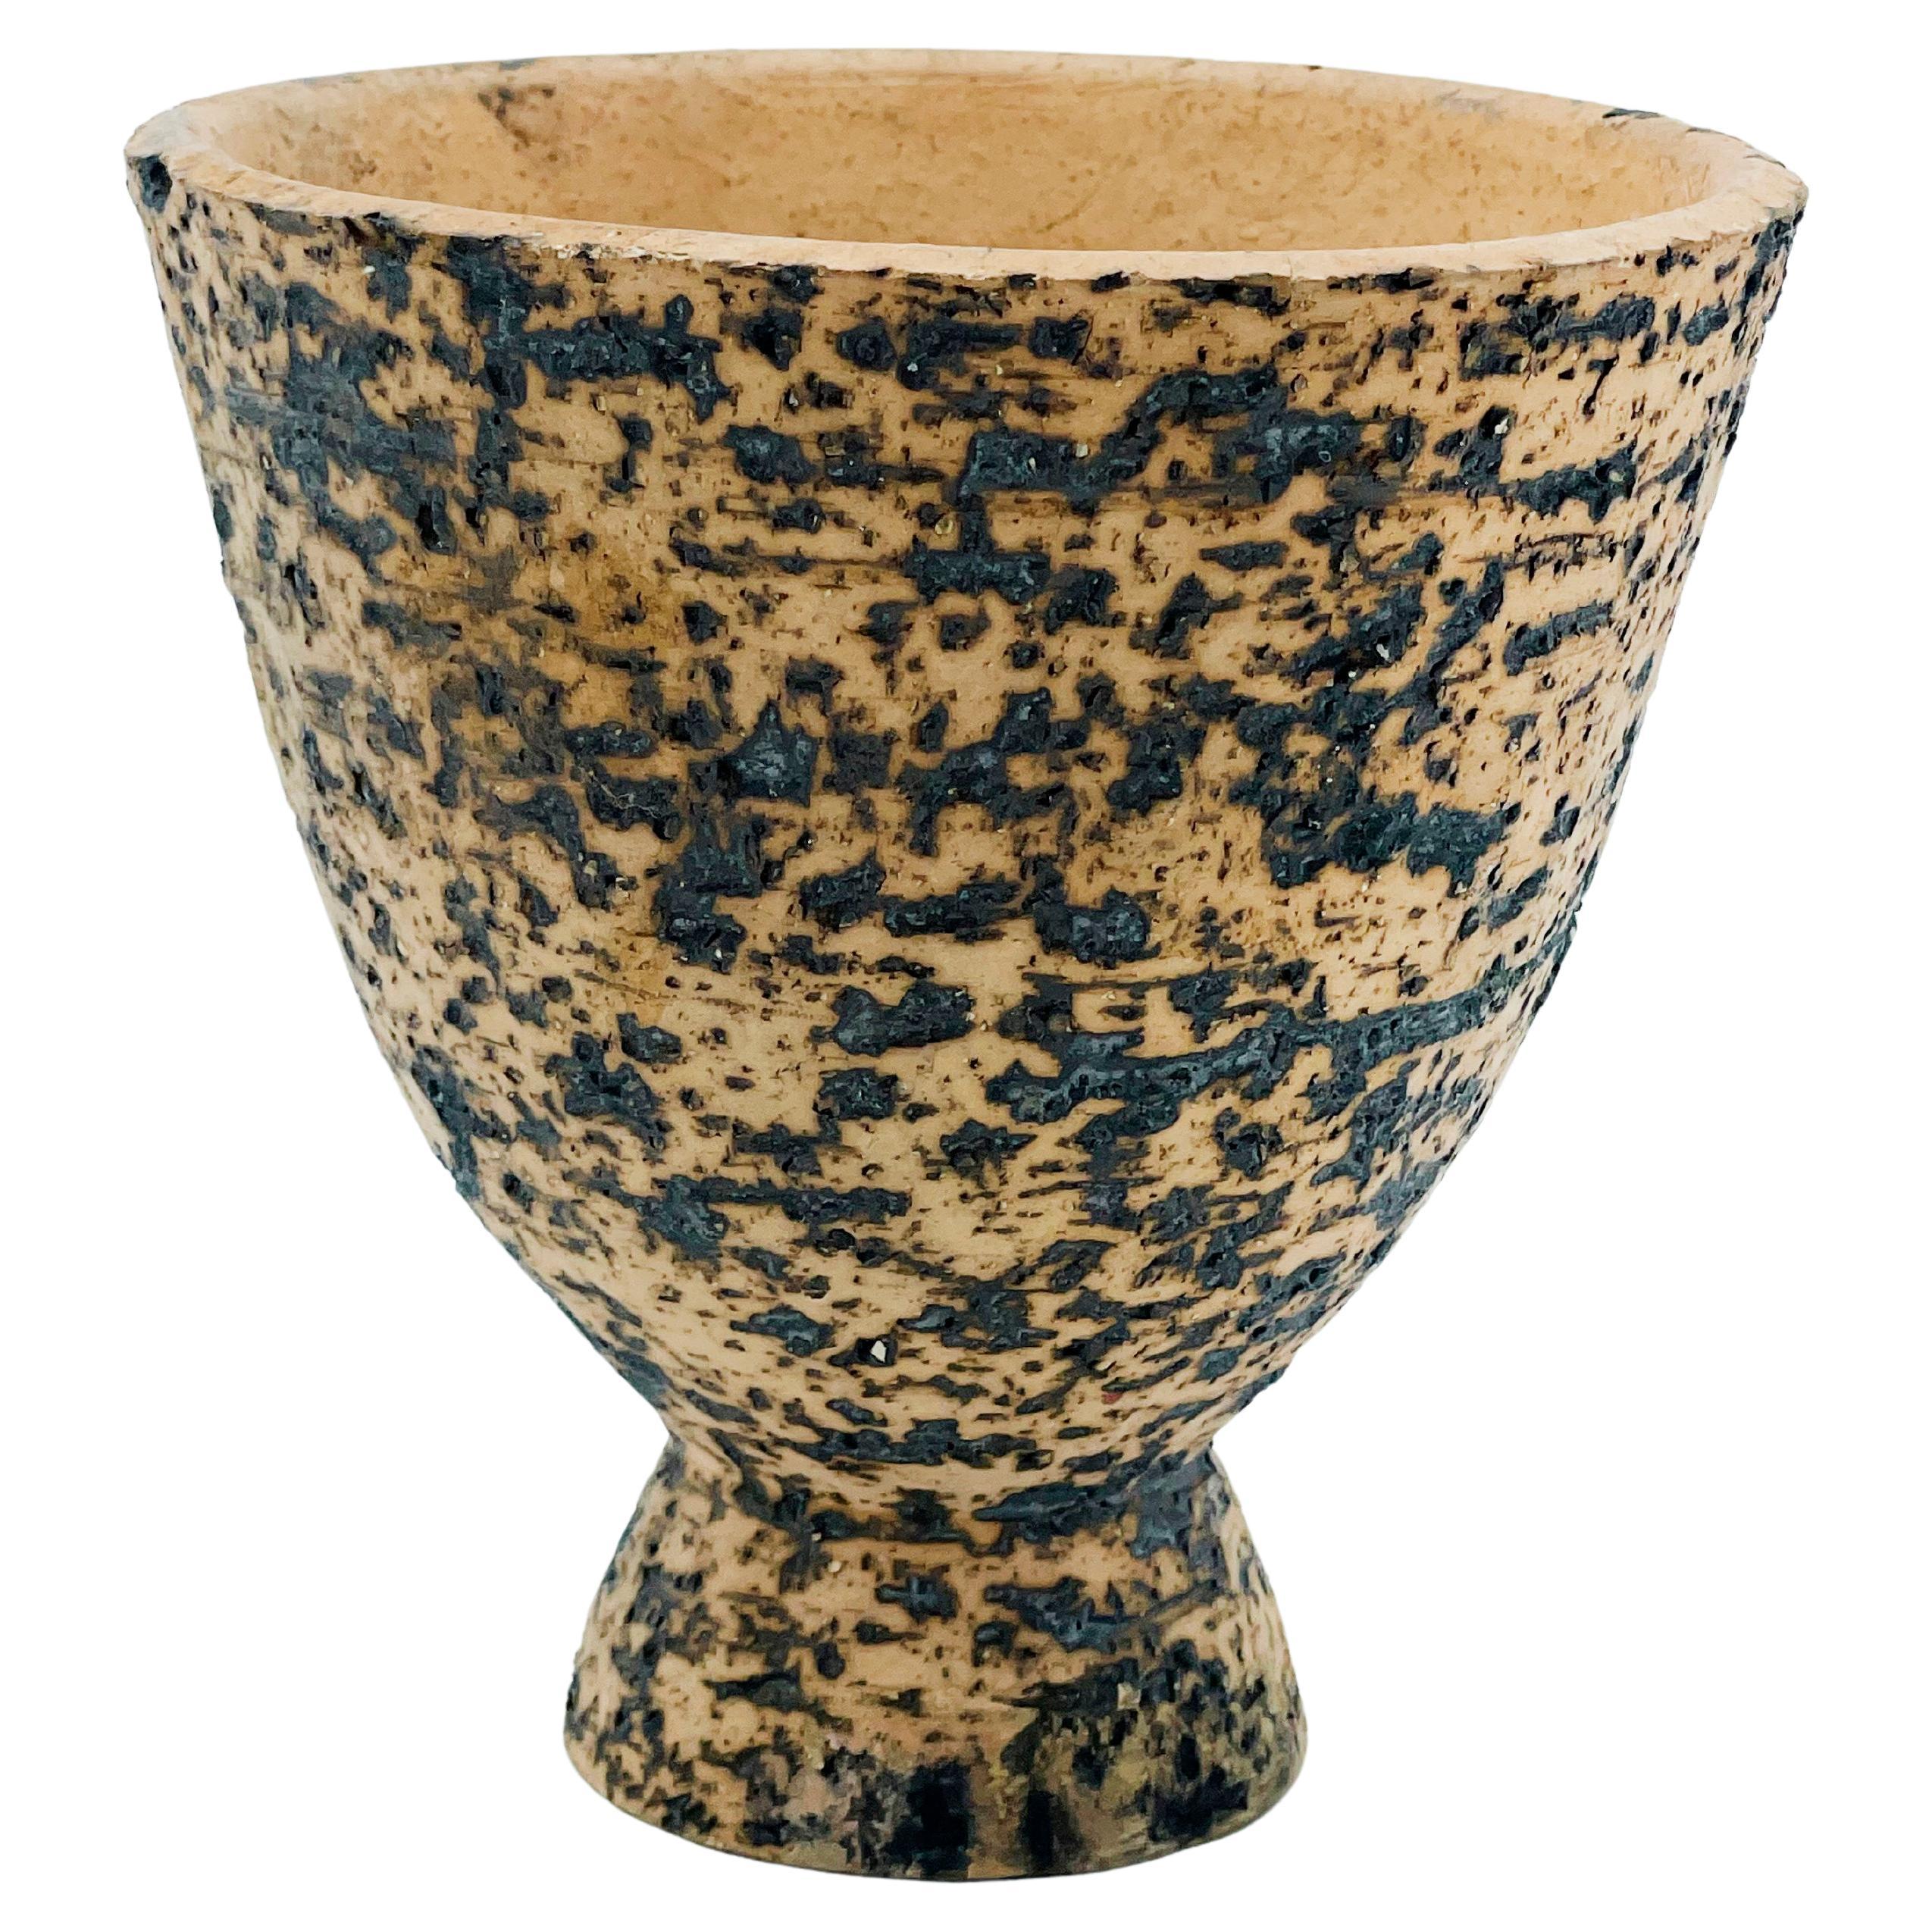 Jean Besnard Art Deco Ceramic Vase 1930 20th Century Design